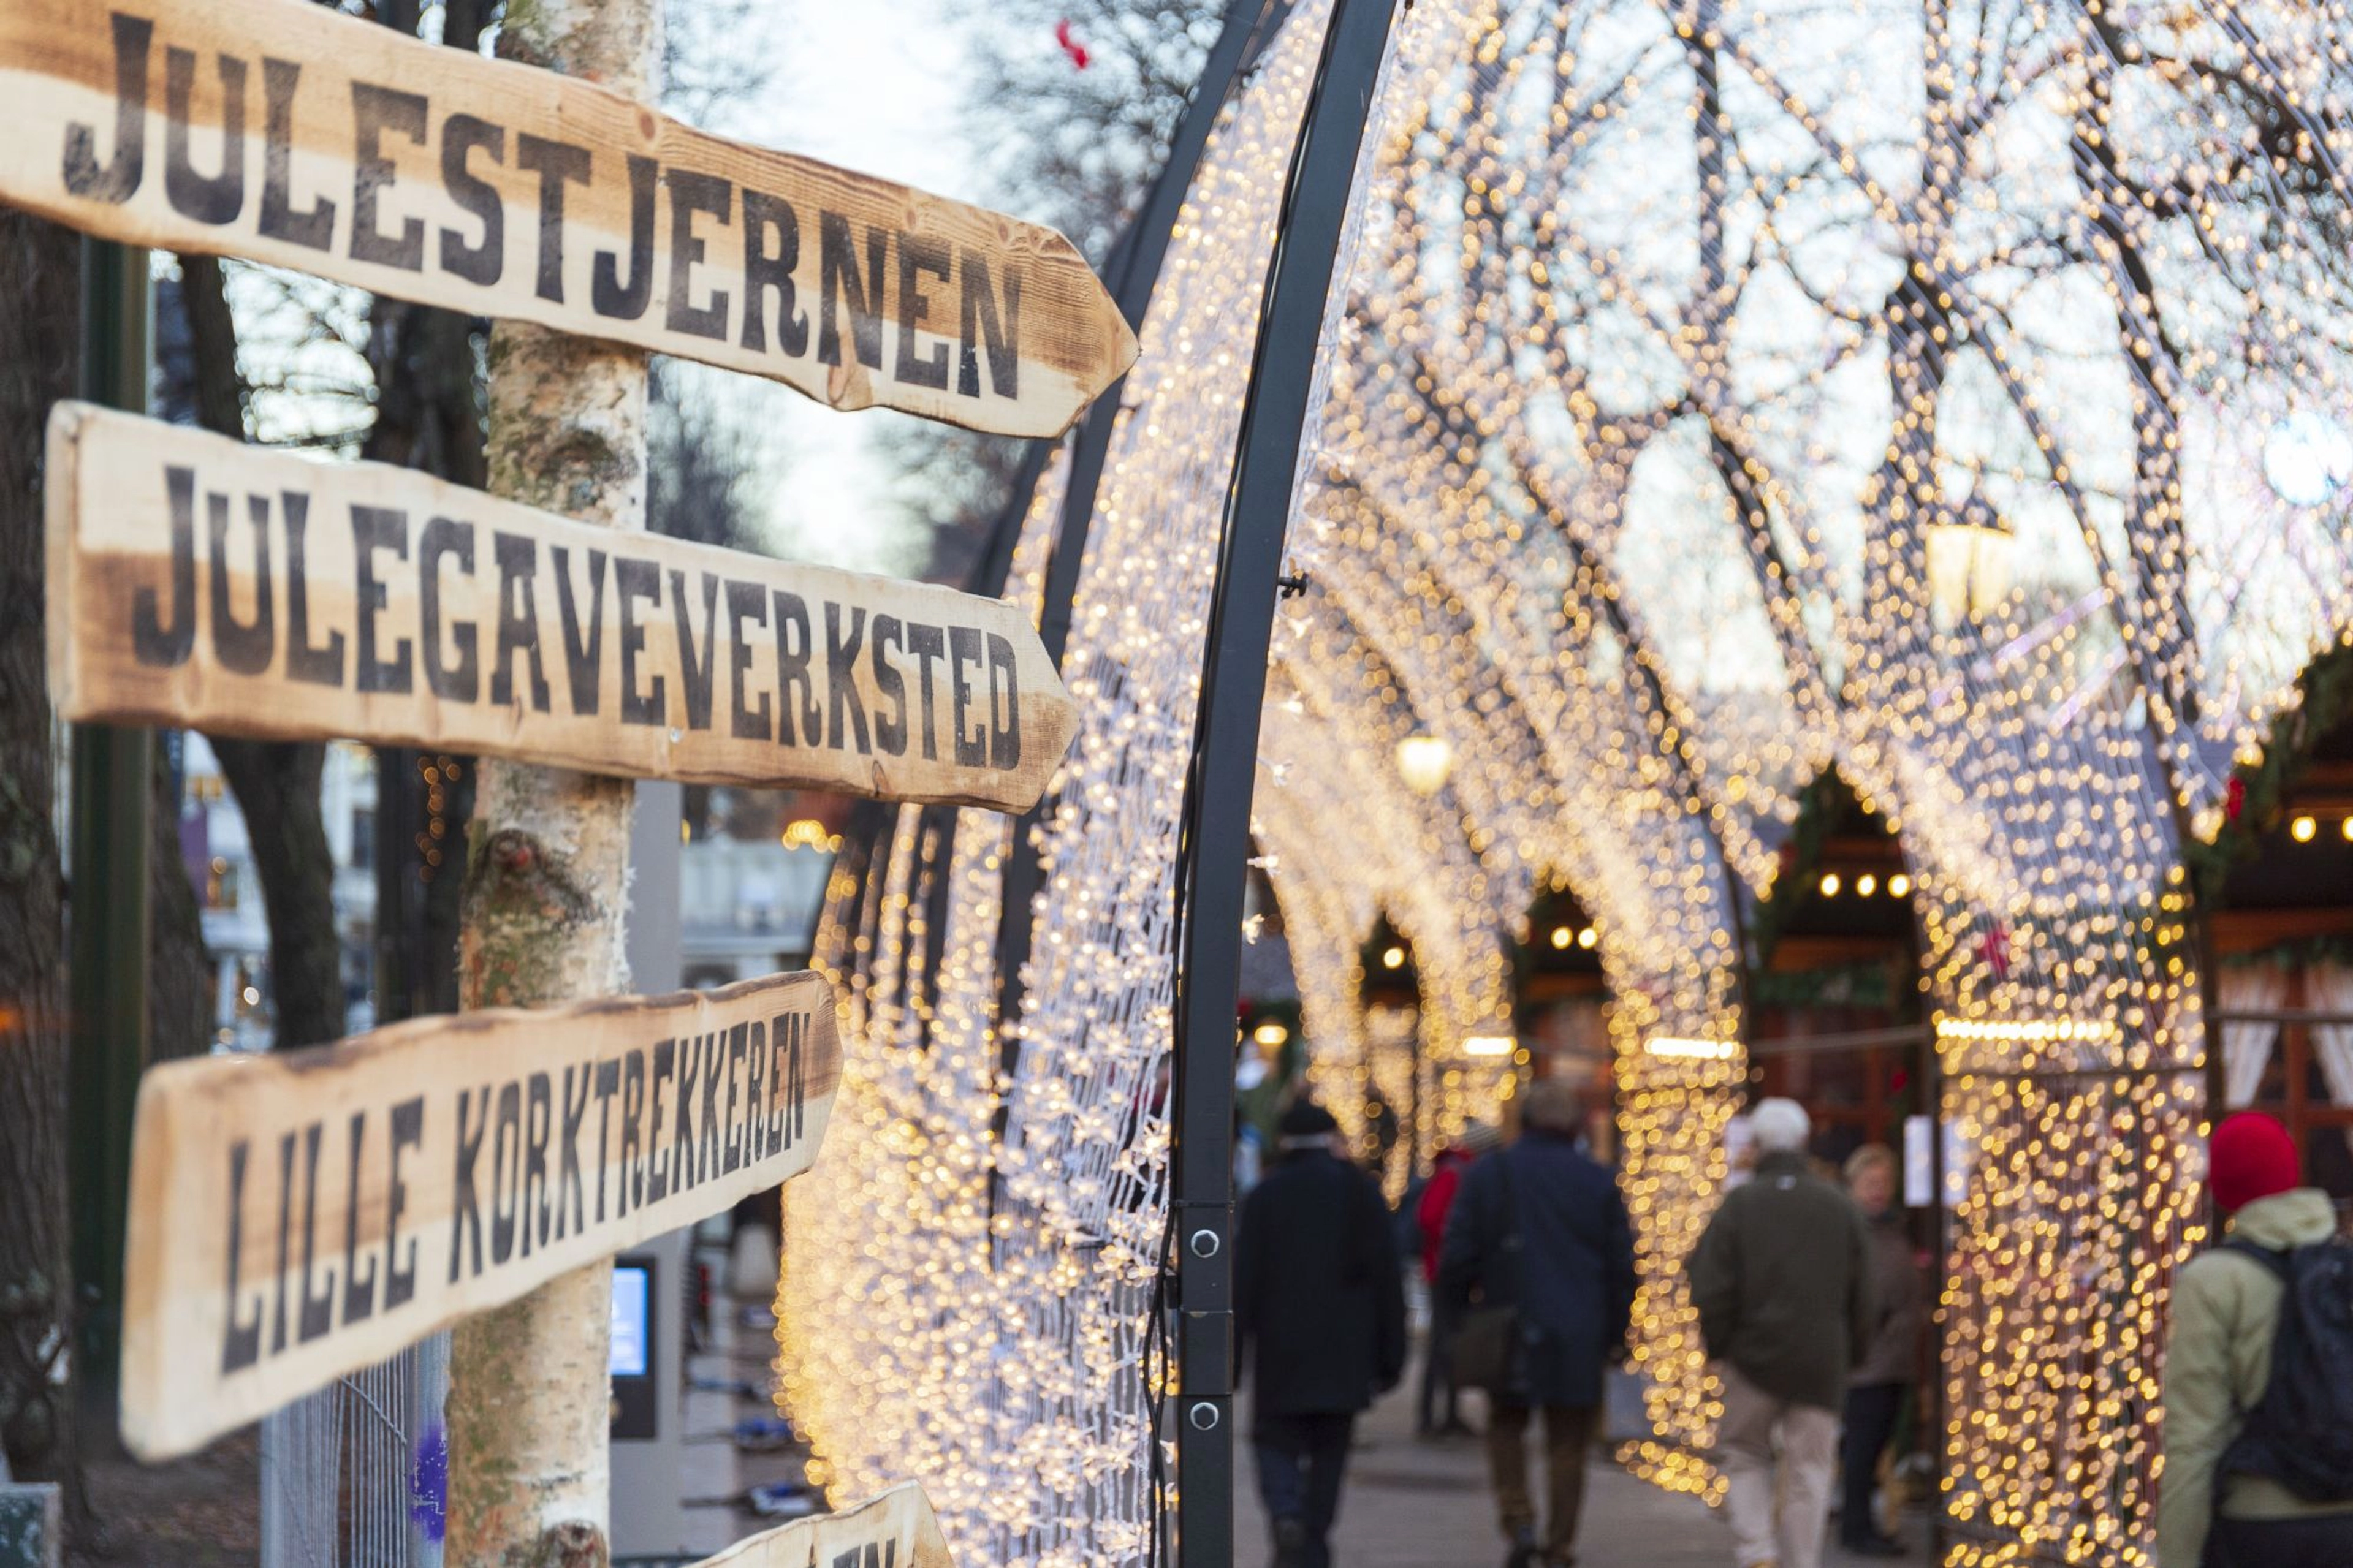 Christmas in winter wonderland - Oslo, Norway